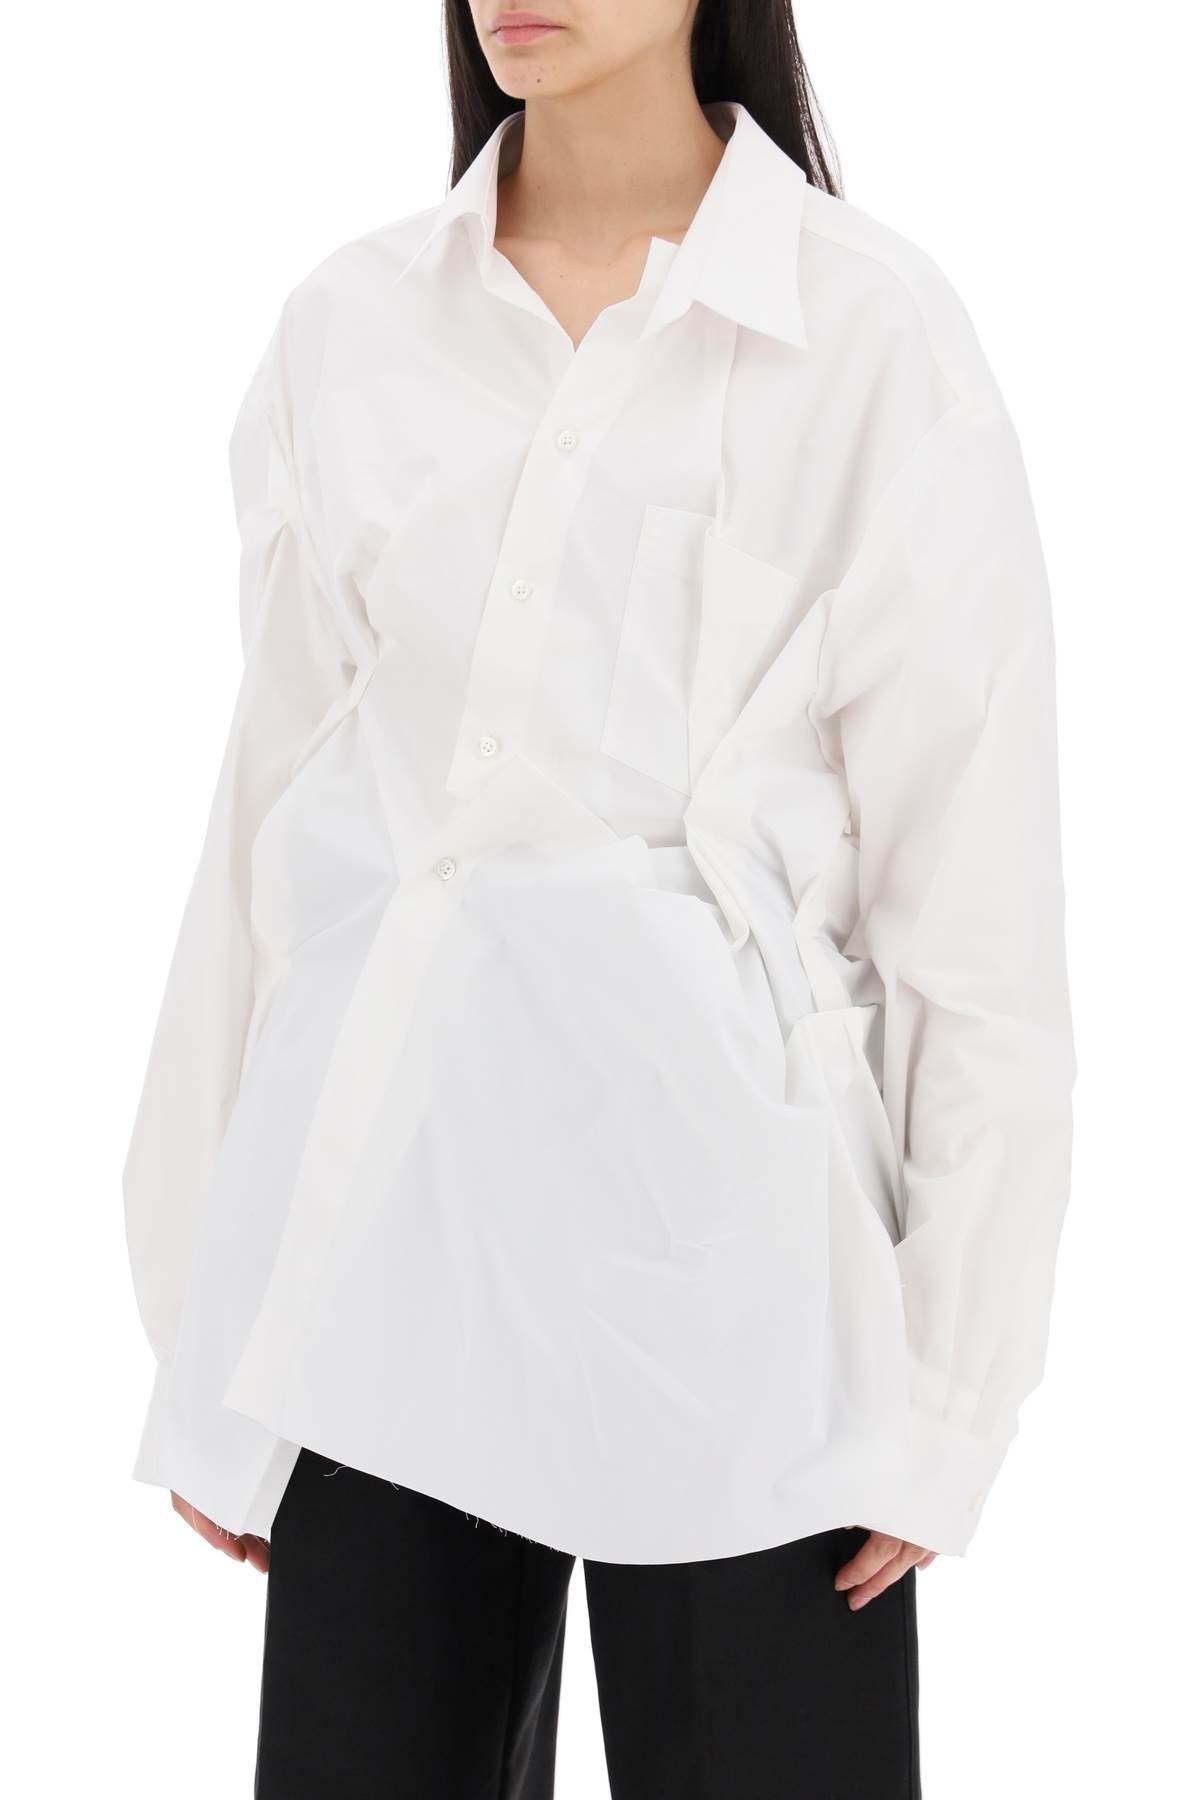 Maison Margiela Draped Oversized Shirt   White